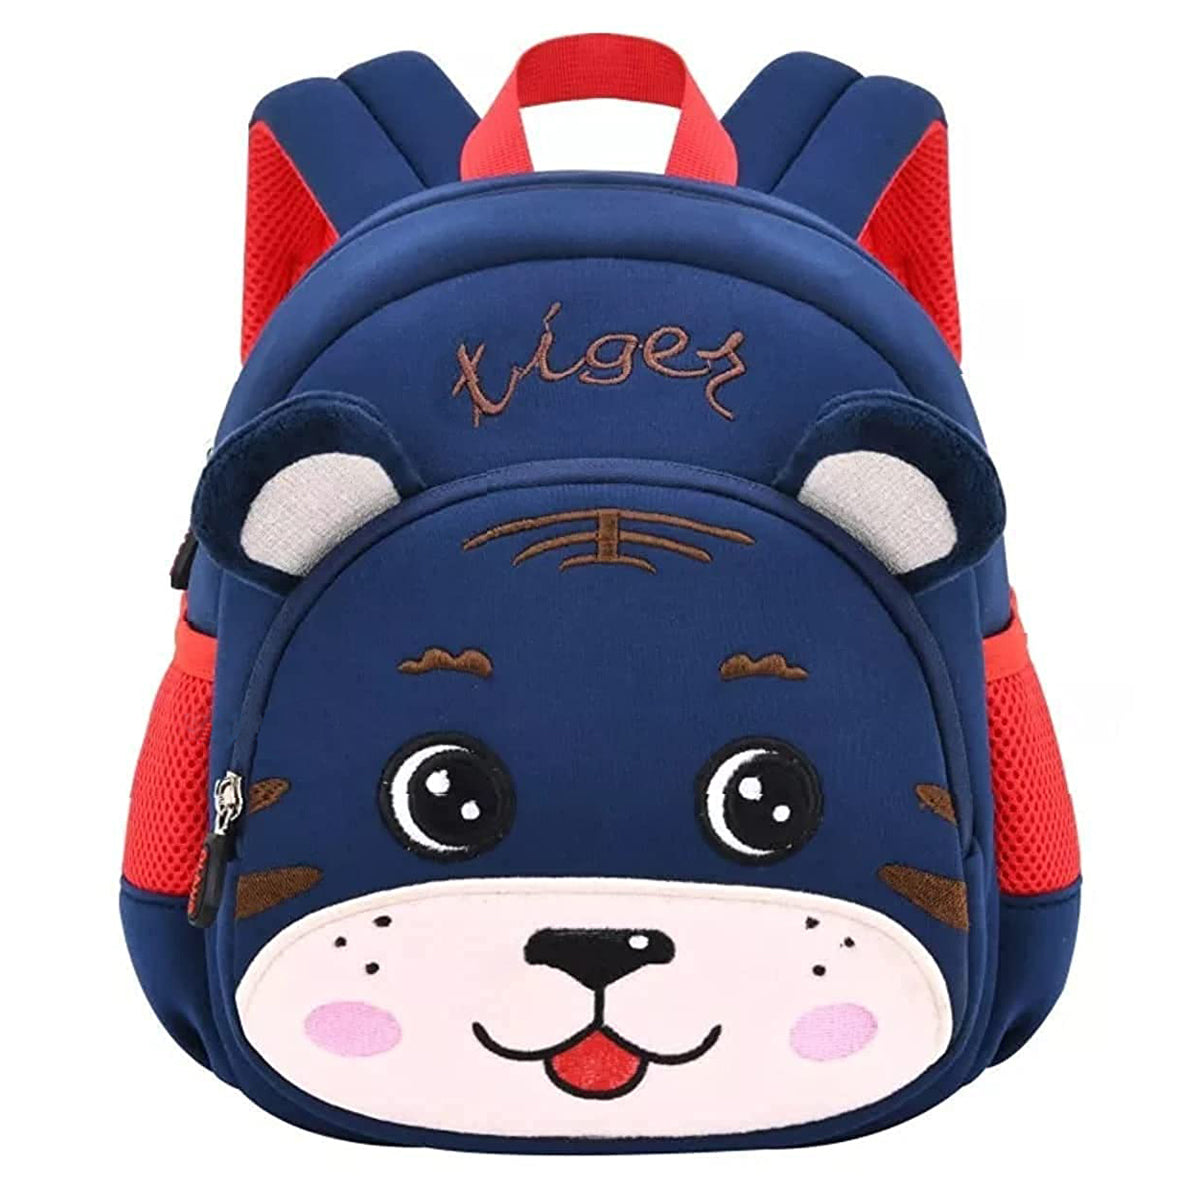 Tiger Backpack Bag For Kids